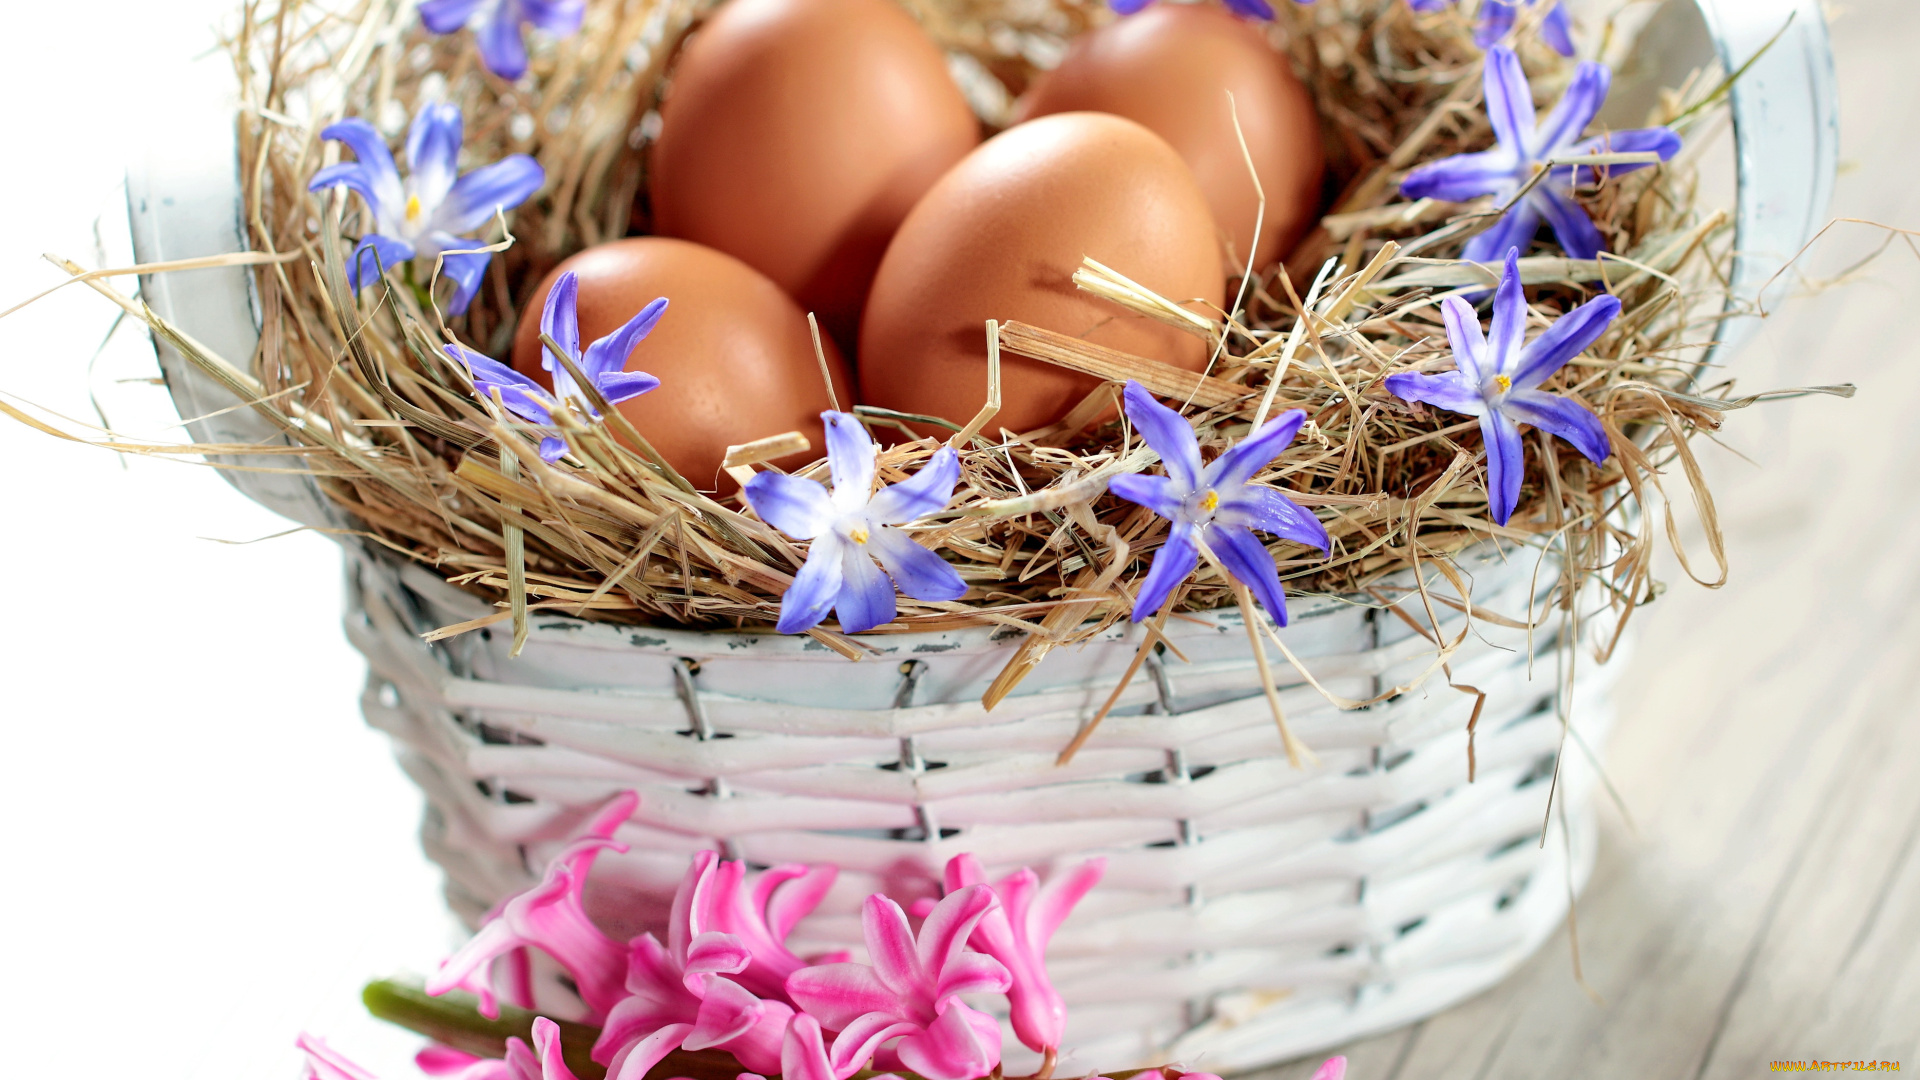 праздничные, пасха, easter, spring, flowers, eggs, pastel, basket, delicate, весна, яйца, цветы, корзина